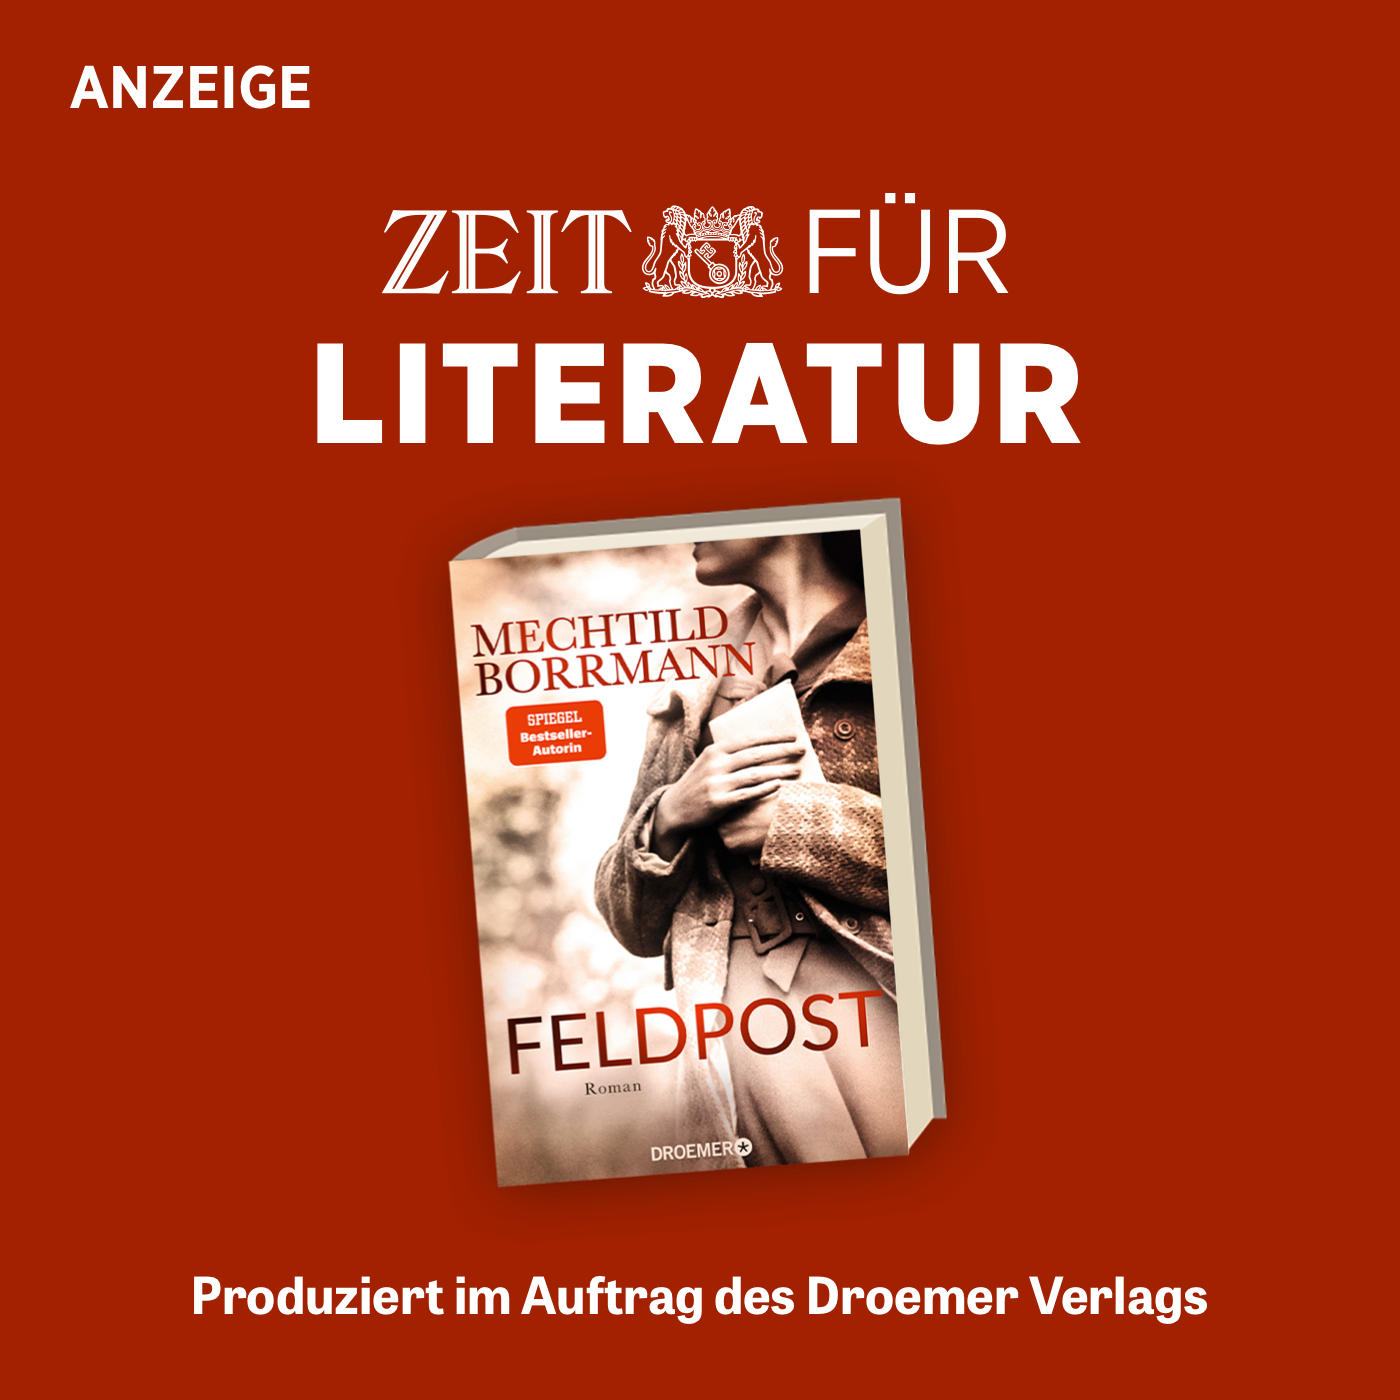 ZEIT für Literatur mit Mechtild Borrmann